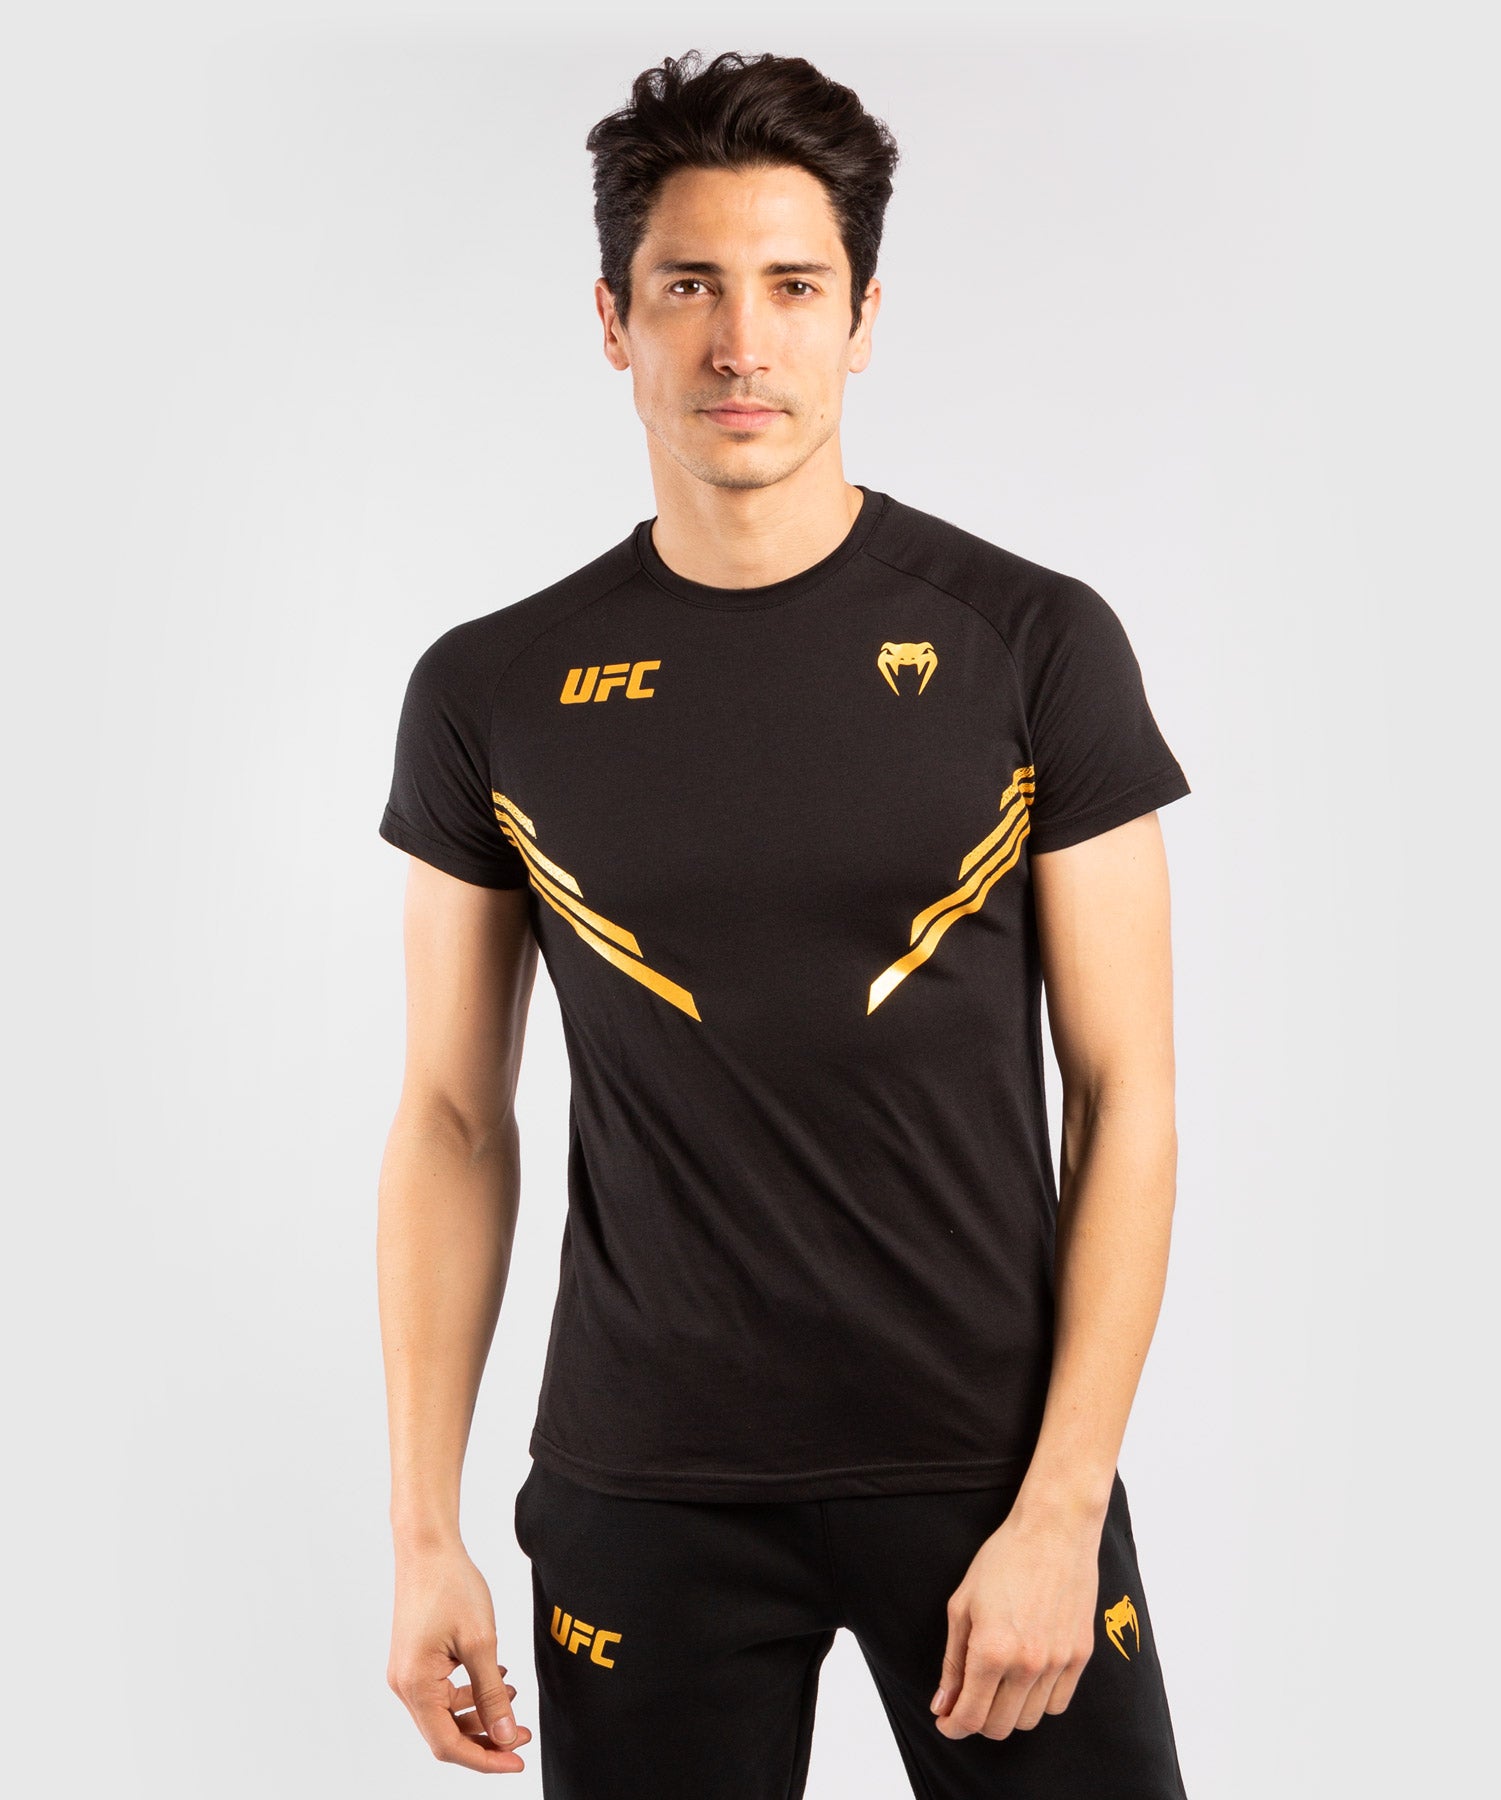 T-shirt Homme UFC Venum Replica - Champion – Venum France